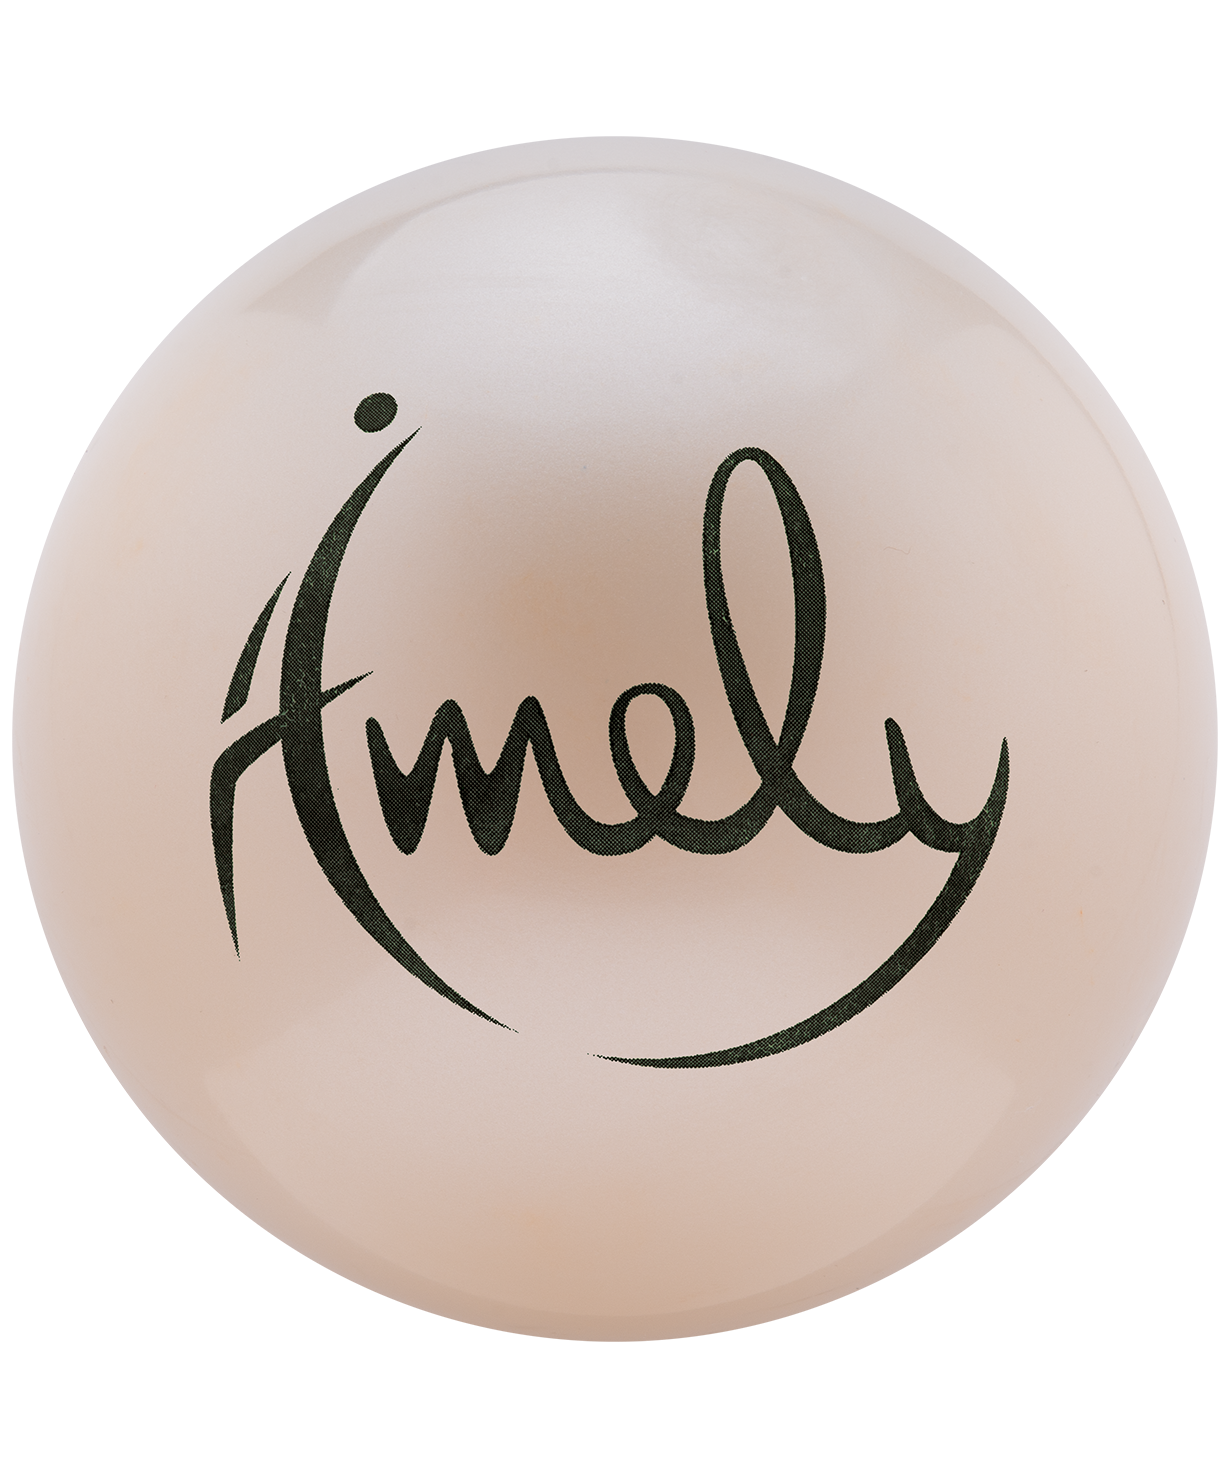 фото Amely мяч для художественной гимнастики amely agb-301 19 см; жемчужный